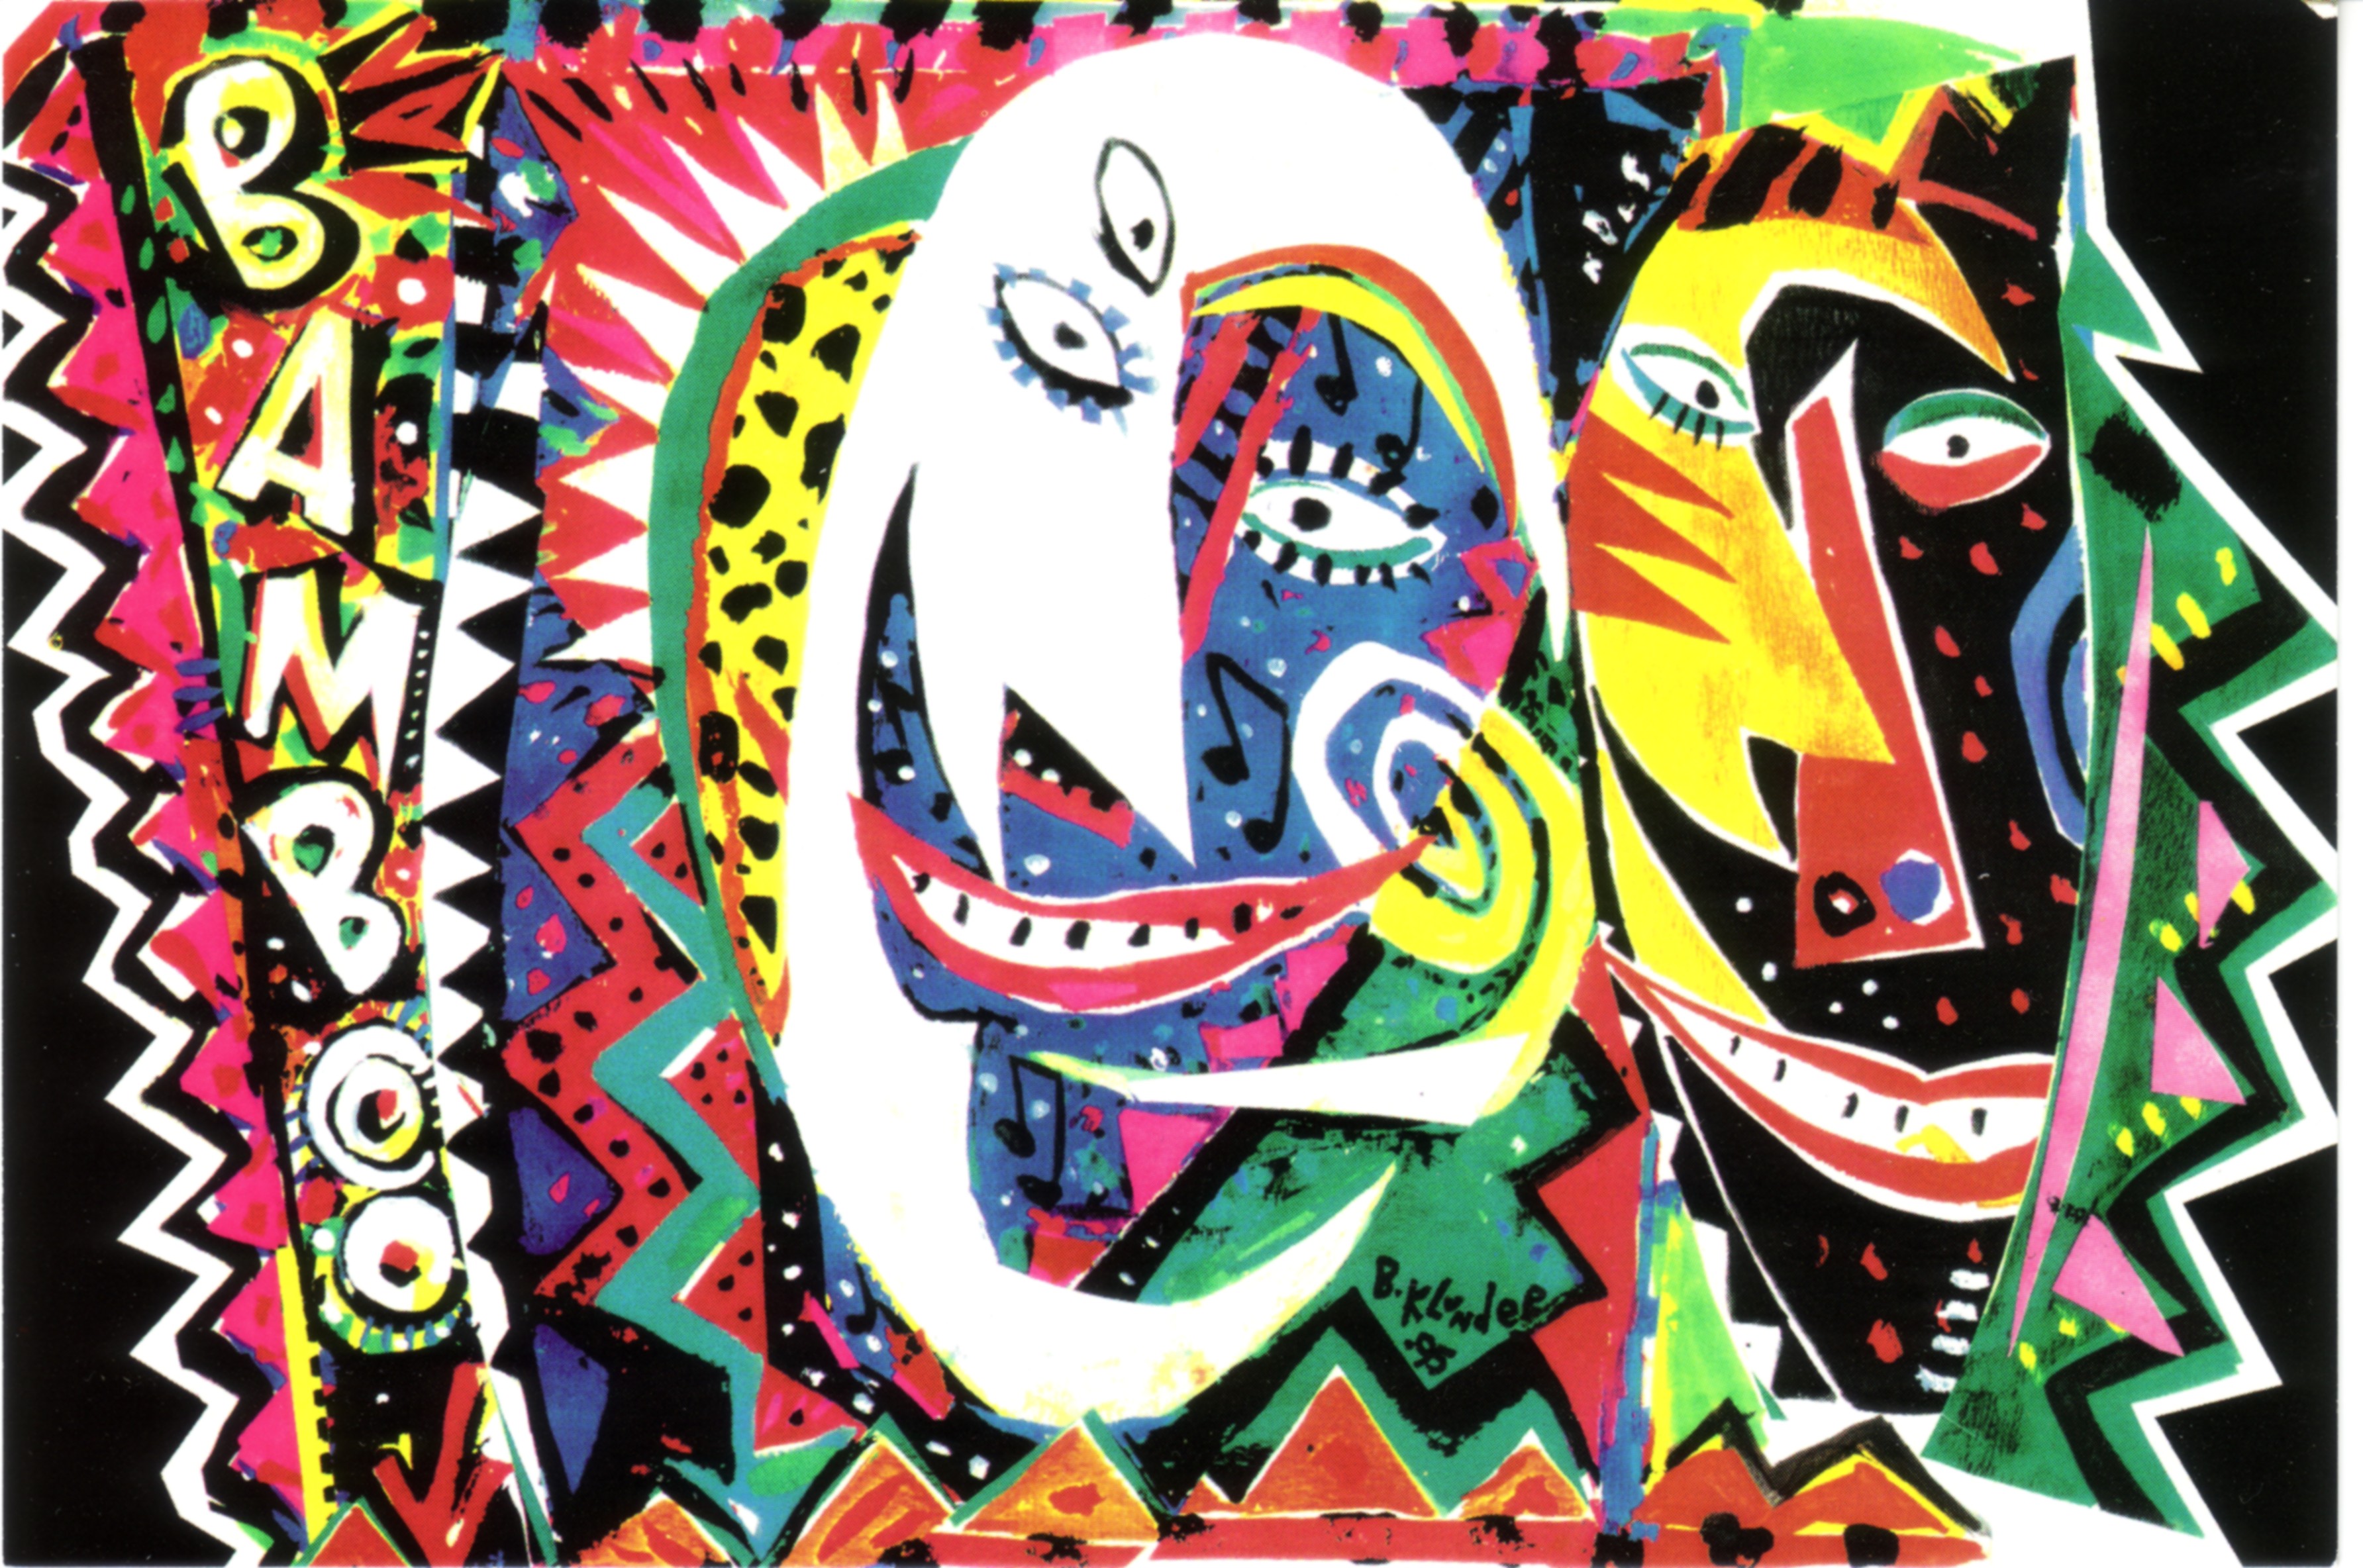 Une carte postale colorée comportant des visages abstraits et géométriques. À gauche, le mot « Bamboo » est écrit à la verticale. 